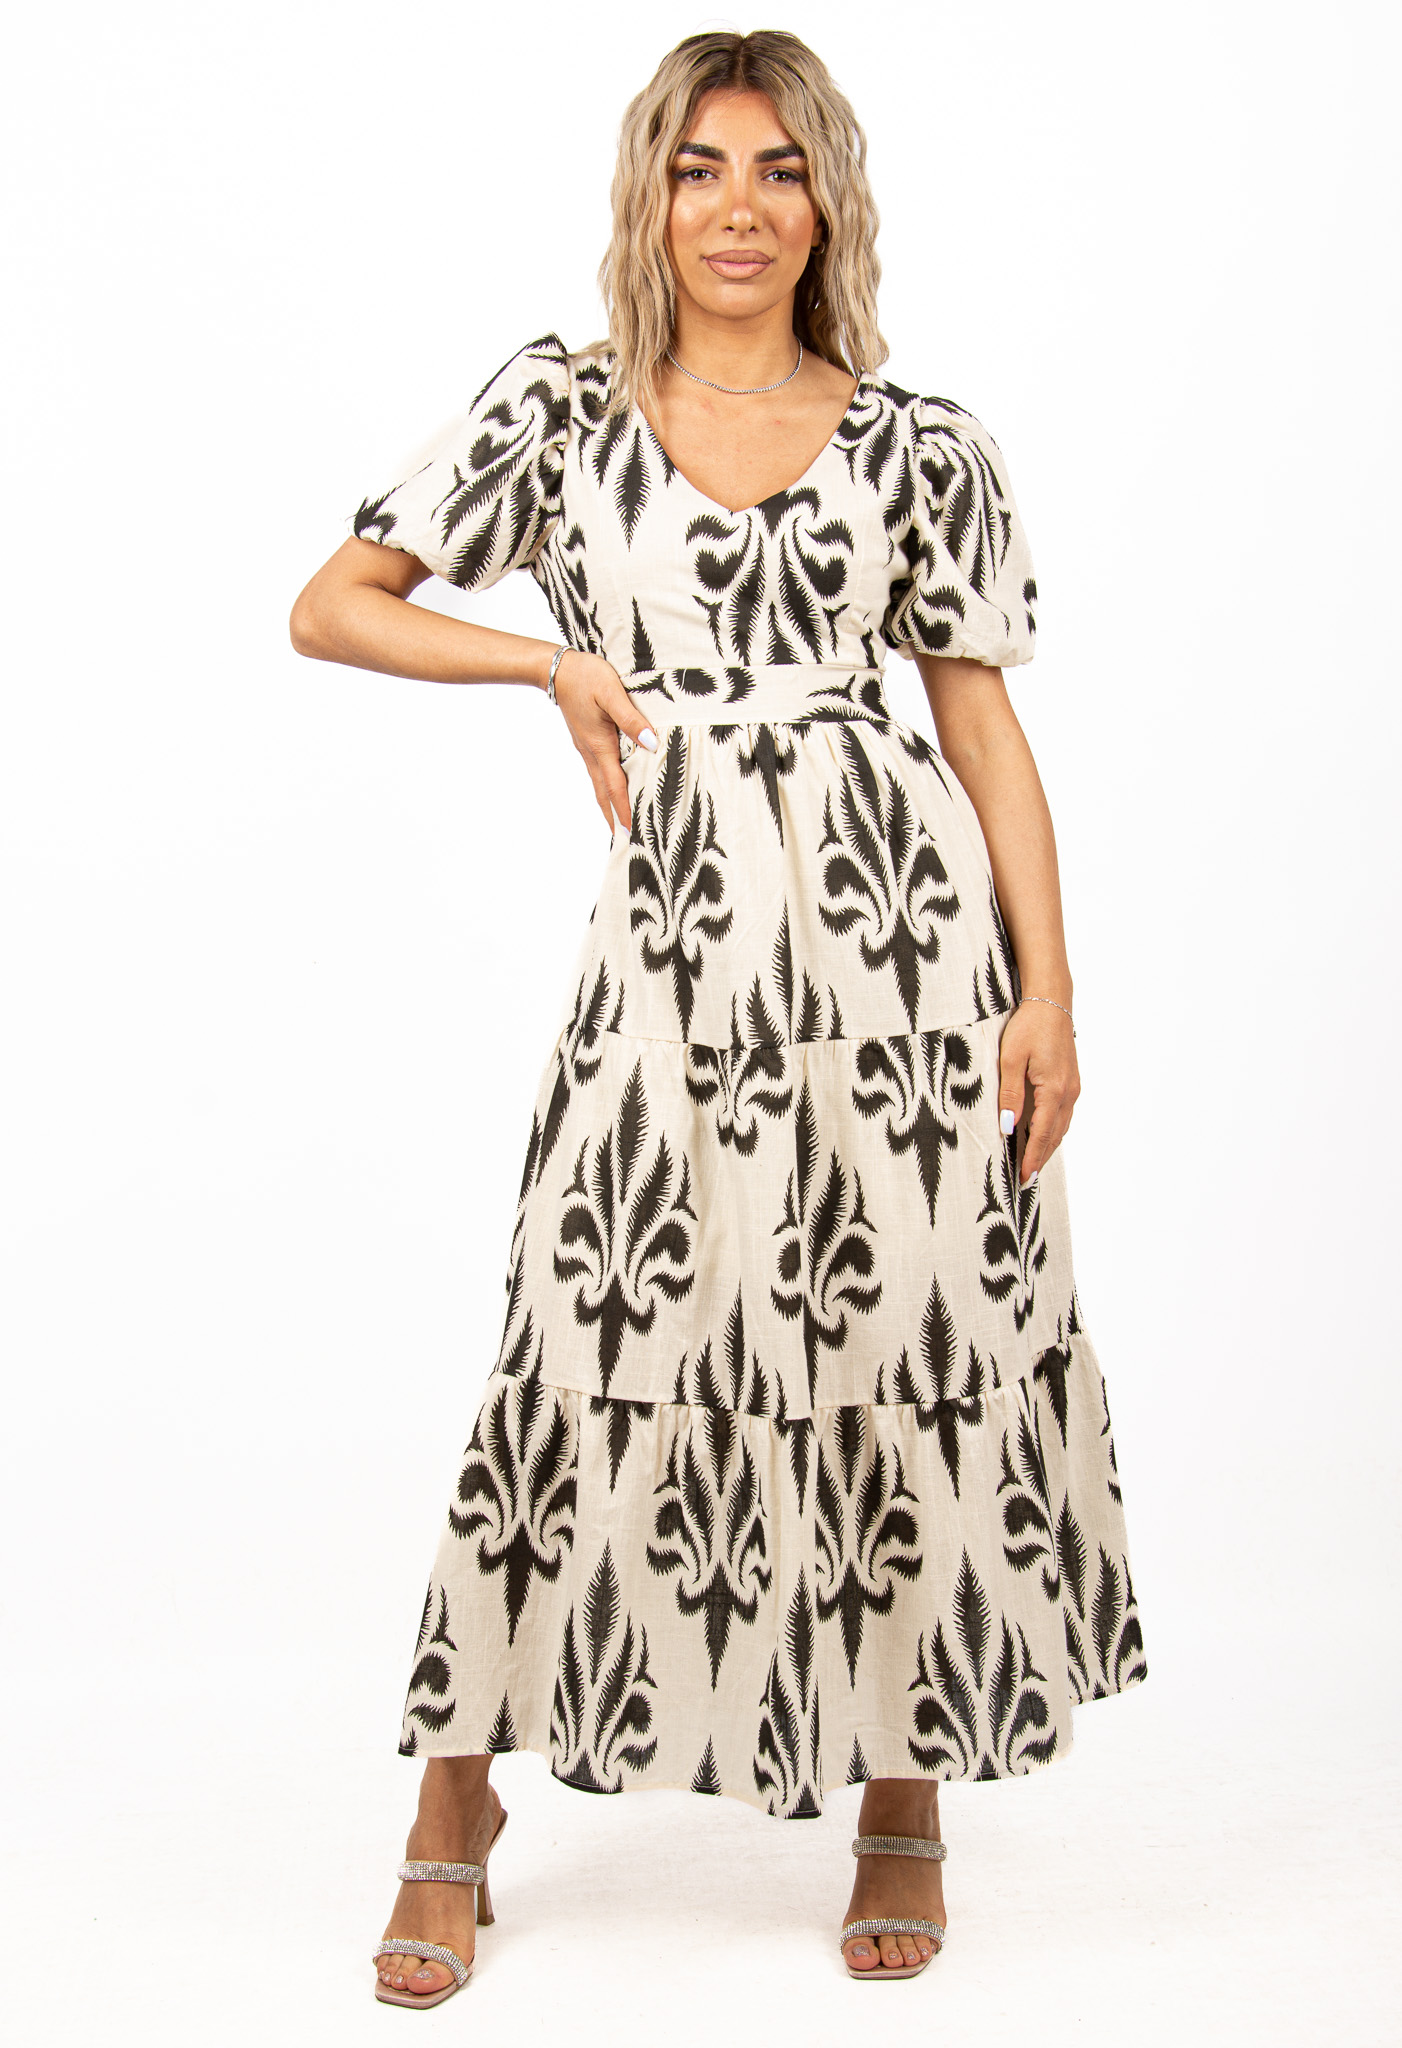 Φόρεμα Μεσάτο με Ζωνάκι Mπεζ | EllenBoutique